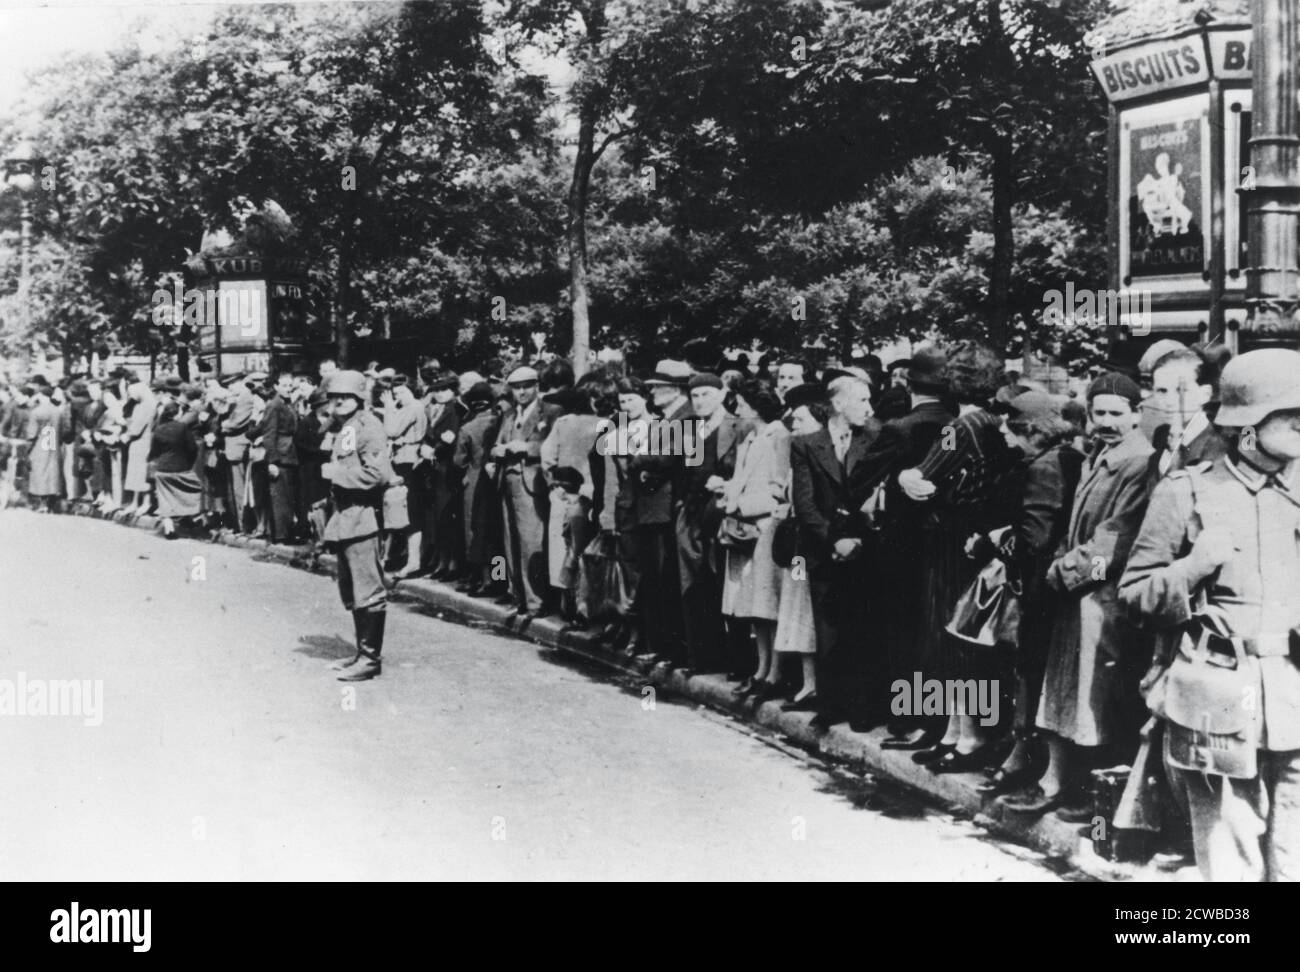 Occupation allemande de Paris, 14 juin 1940. Des foules de Parisiens bordent les rues pour observer l'arrivée des troupes allemandes d'occupation. Le photographe est inconnu. Banque D'Images